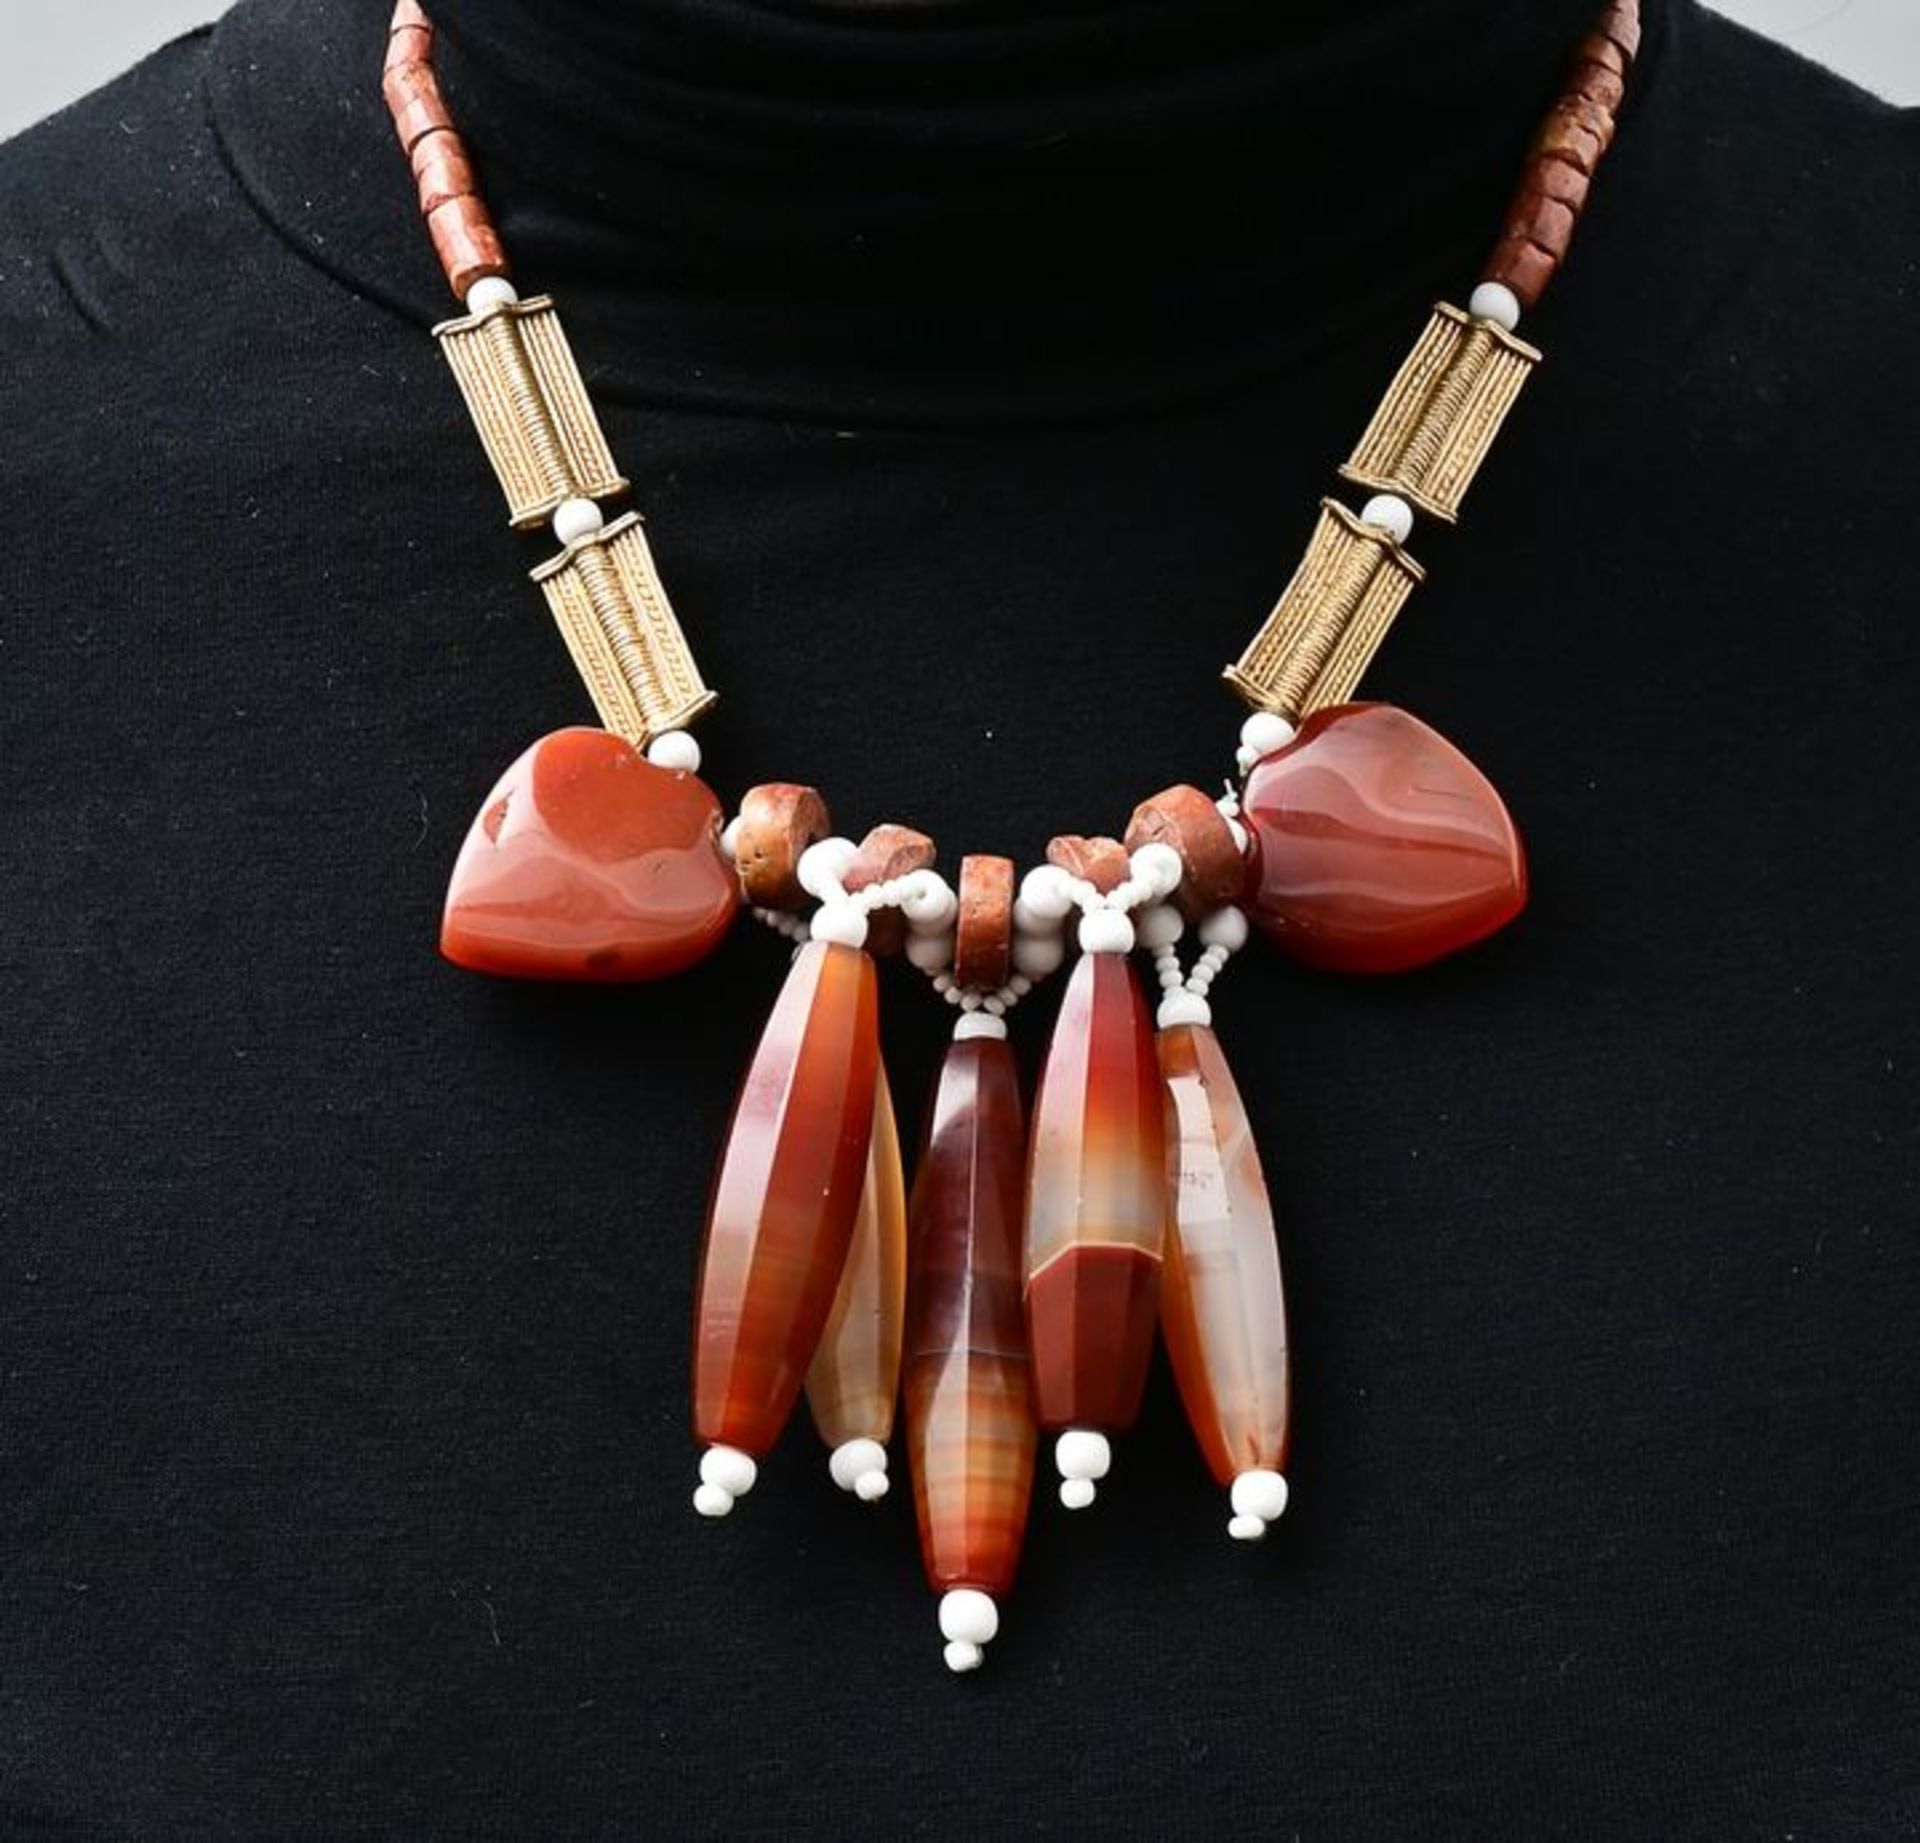 Collier Karneol/ Bauxit/ Kupfer vergoldet/ necklace